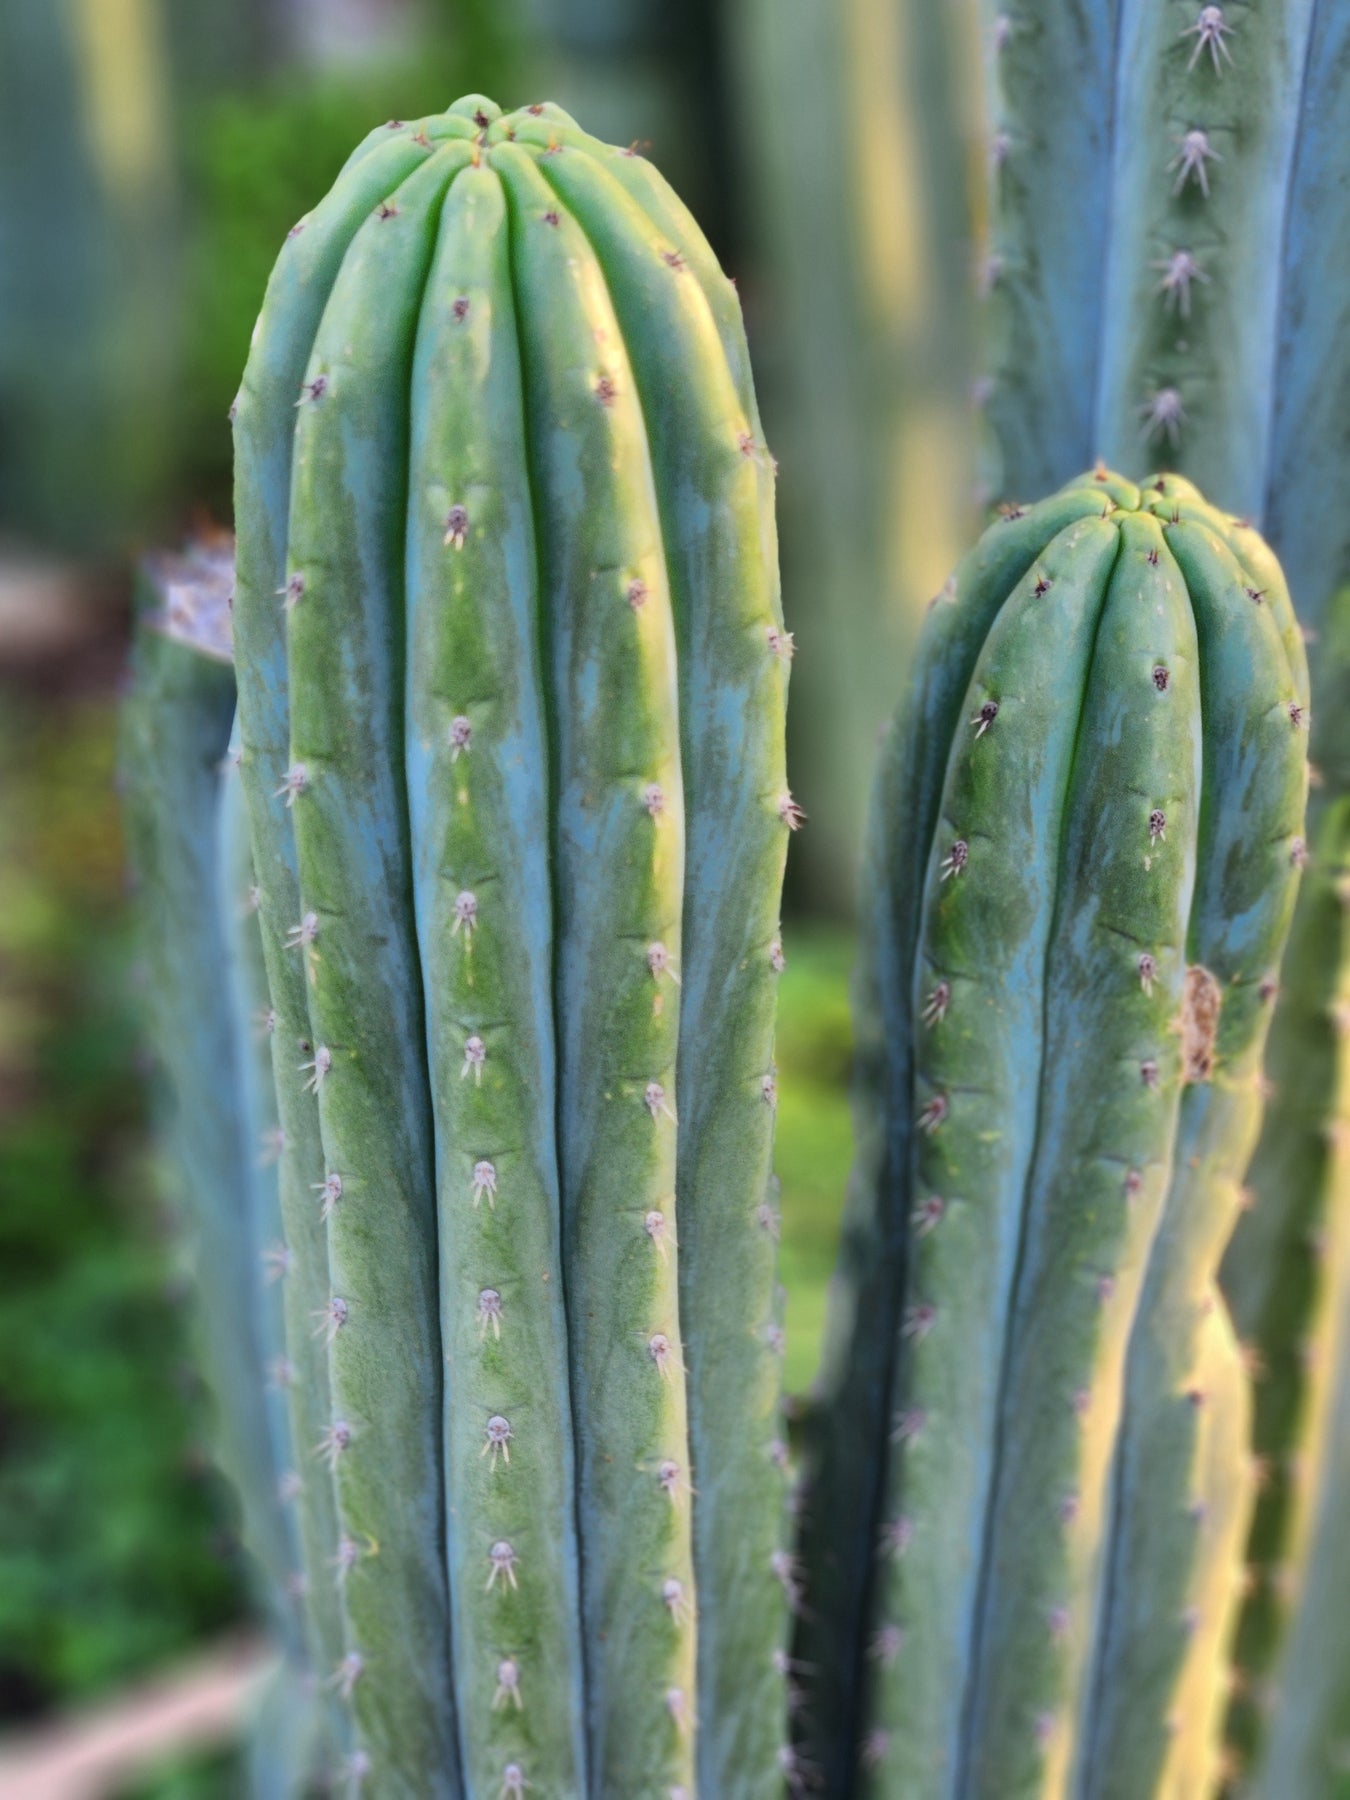 #EC196 EXACT trichocereus Peruvianus "Rancho" Ornamental Cactus Cutting 7-8"-Cactus - Large - Exact-The Succulent Source